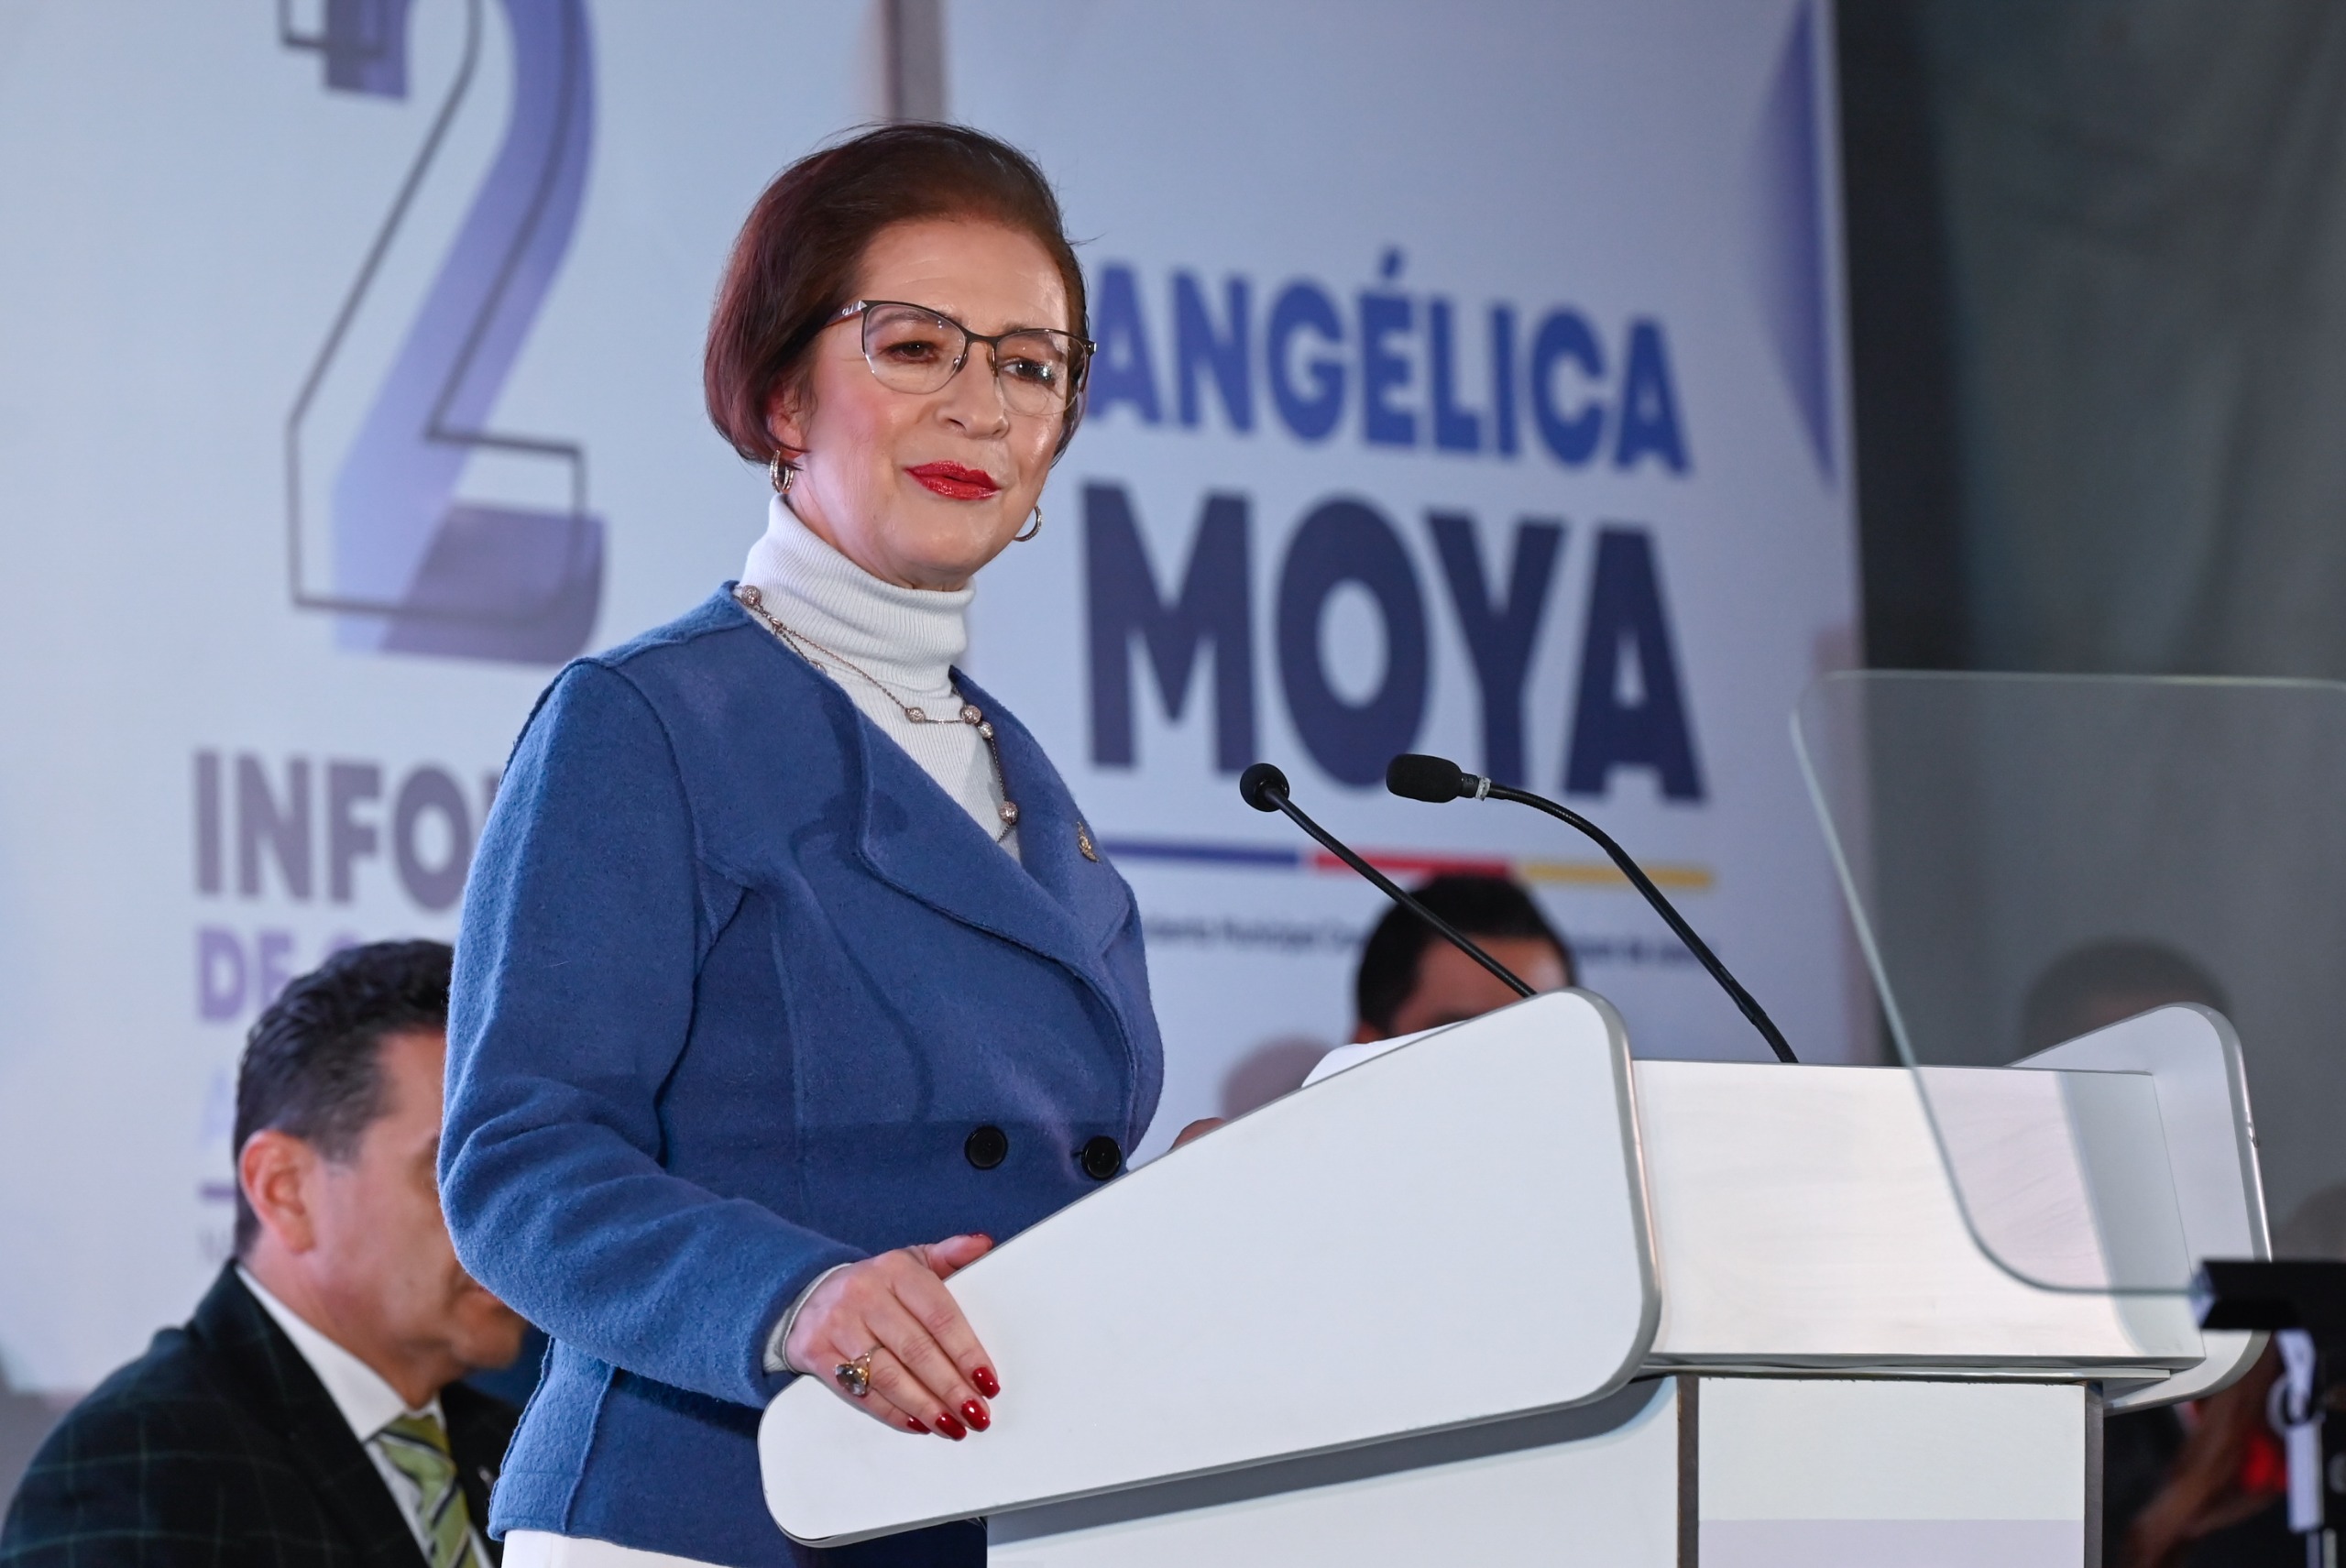 Avanzamos en finanzas, seguridad, obra pública y servicios: Angélica Moya Marín